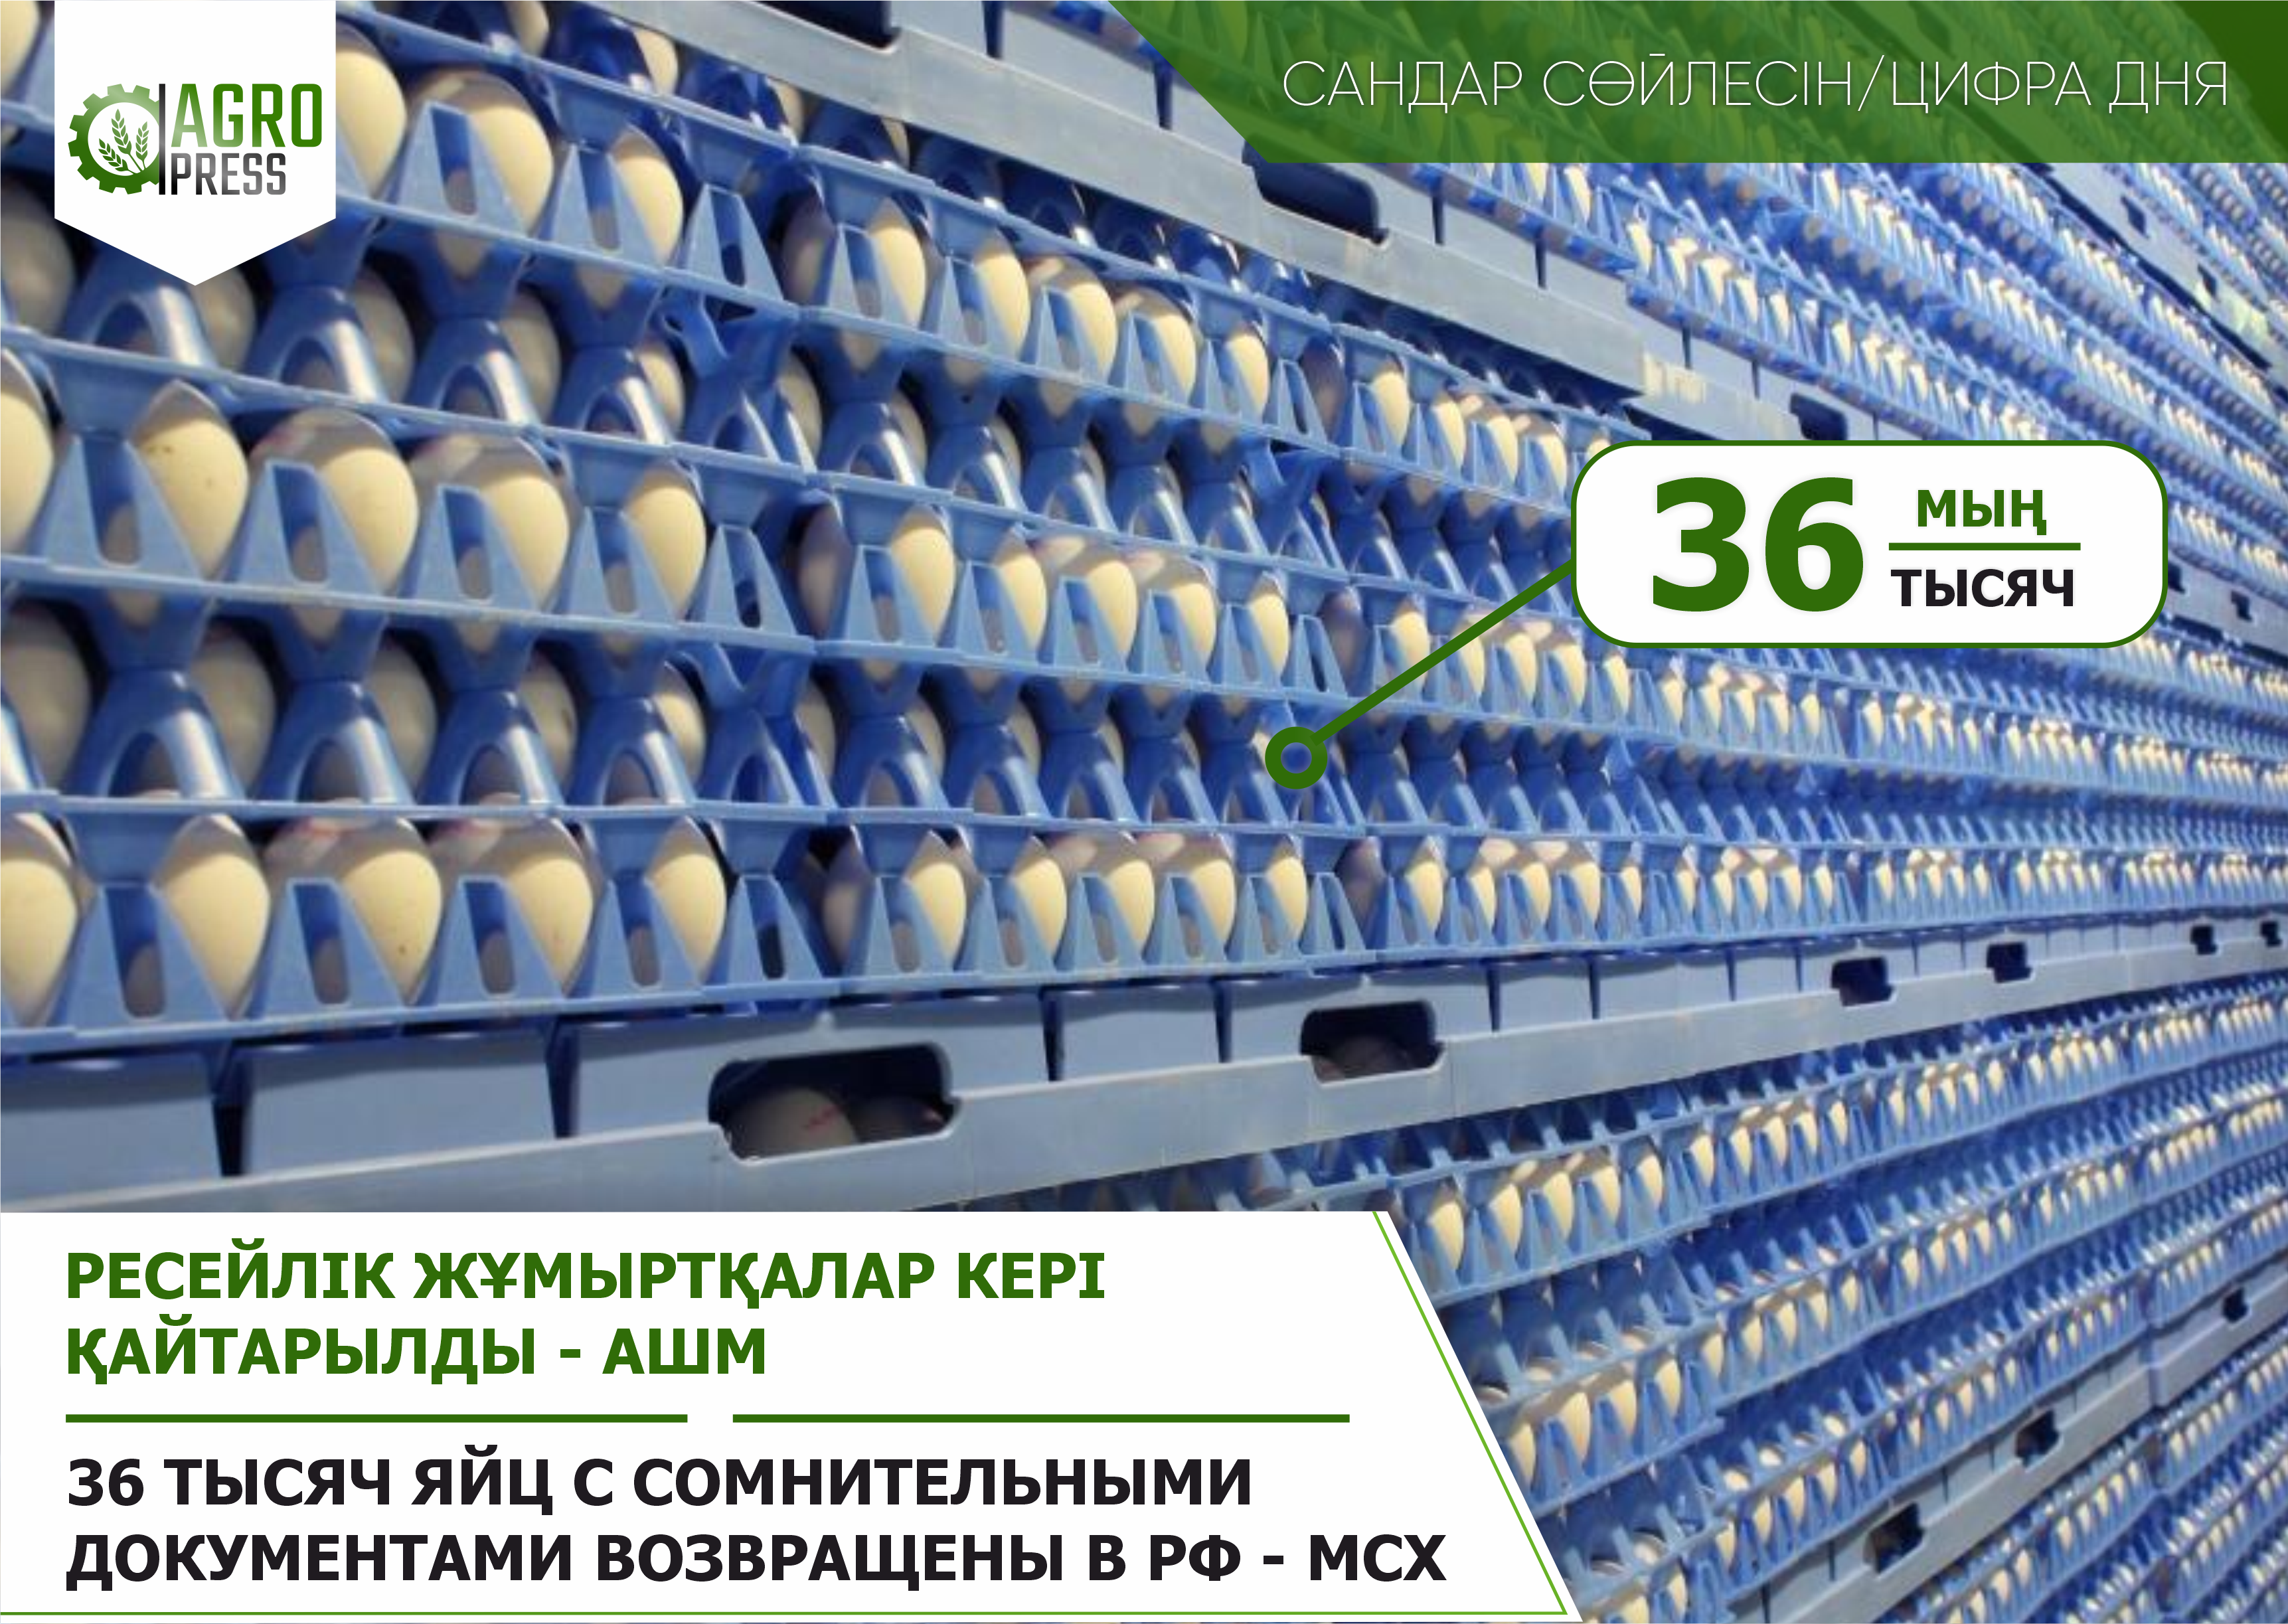 36 тысяч яйц с сомнительными документами возвращены в РФ - МСХ